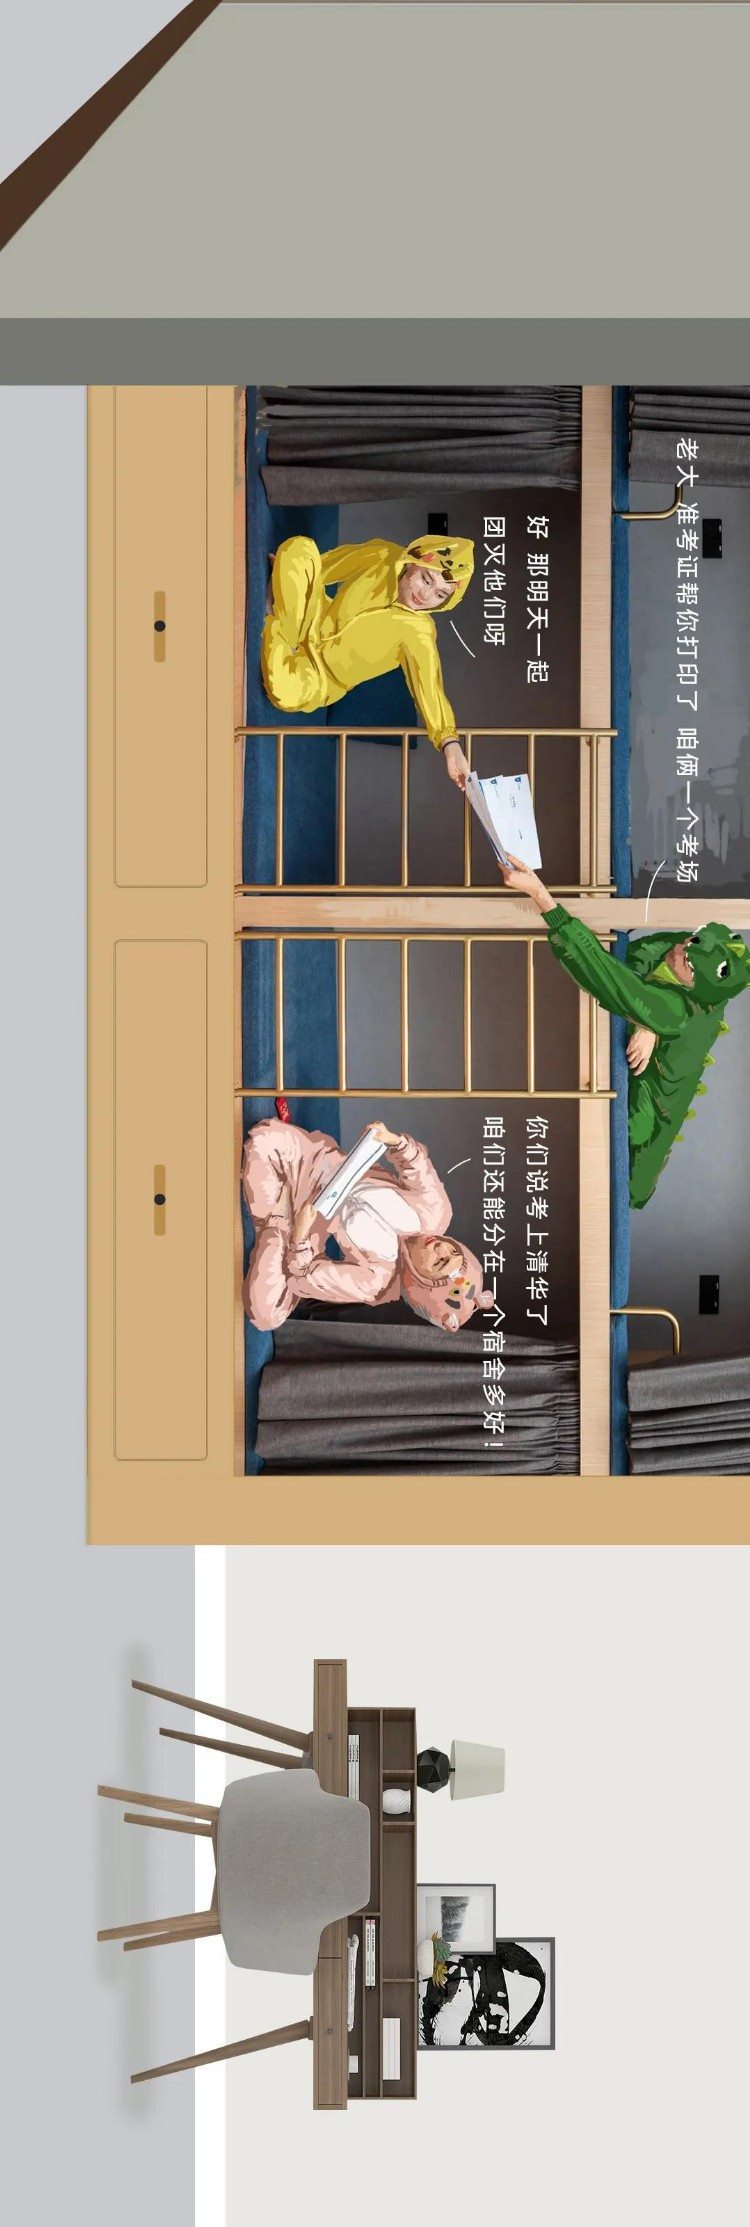 一张长图 曝光美术生集训震撼全过程「北京飙地画室」